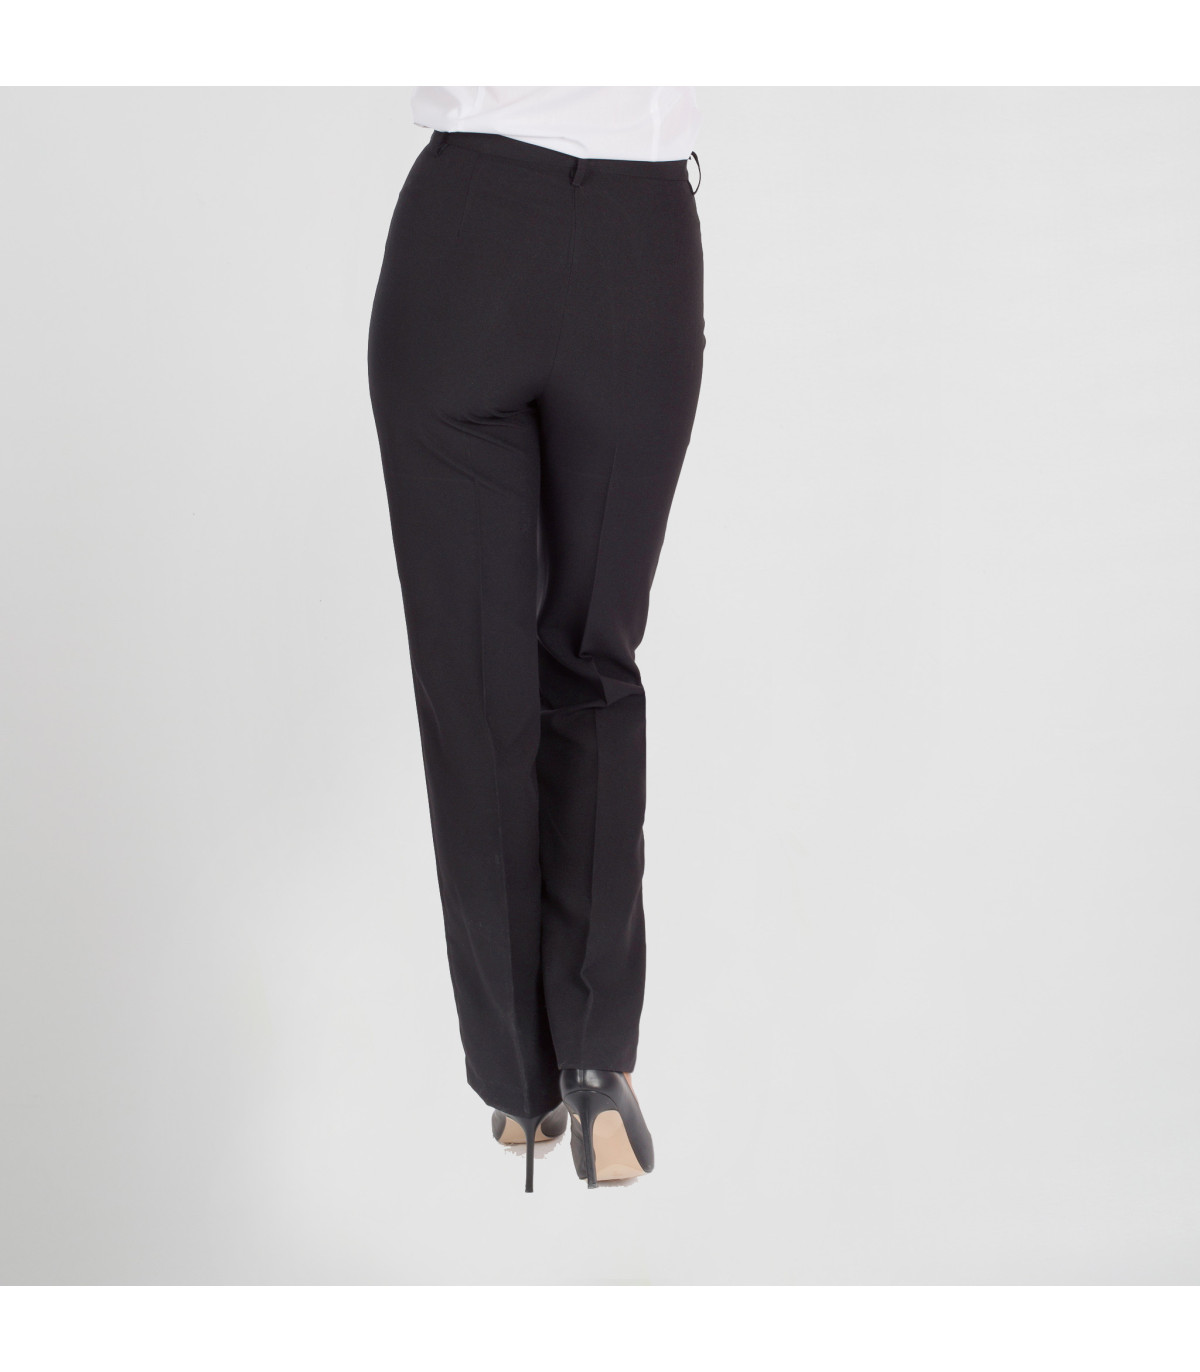 Pantalhão feminino ajustado de altura GARY'S Strech skrc-ro